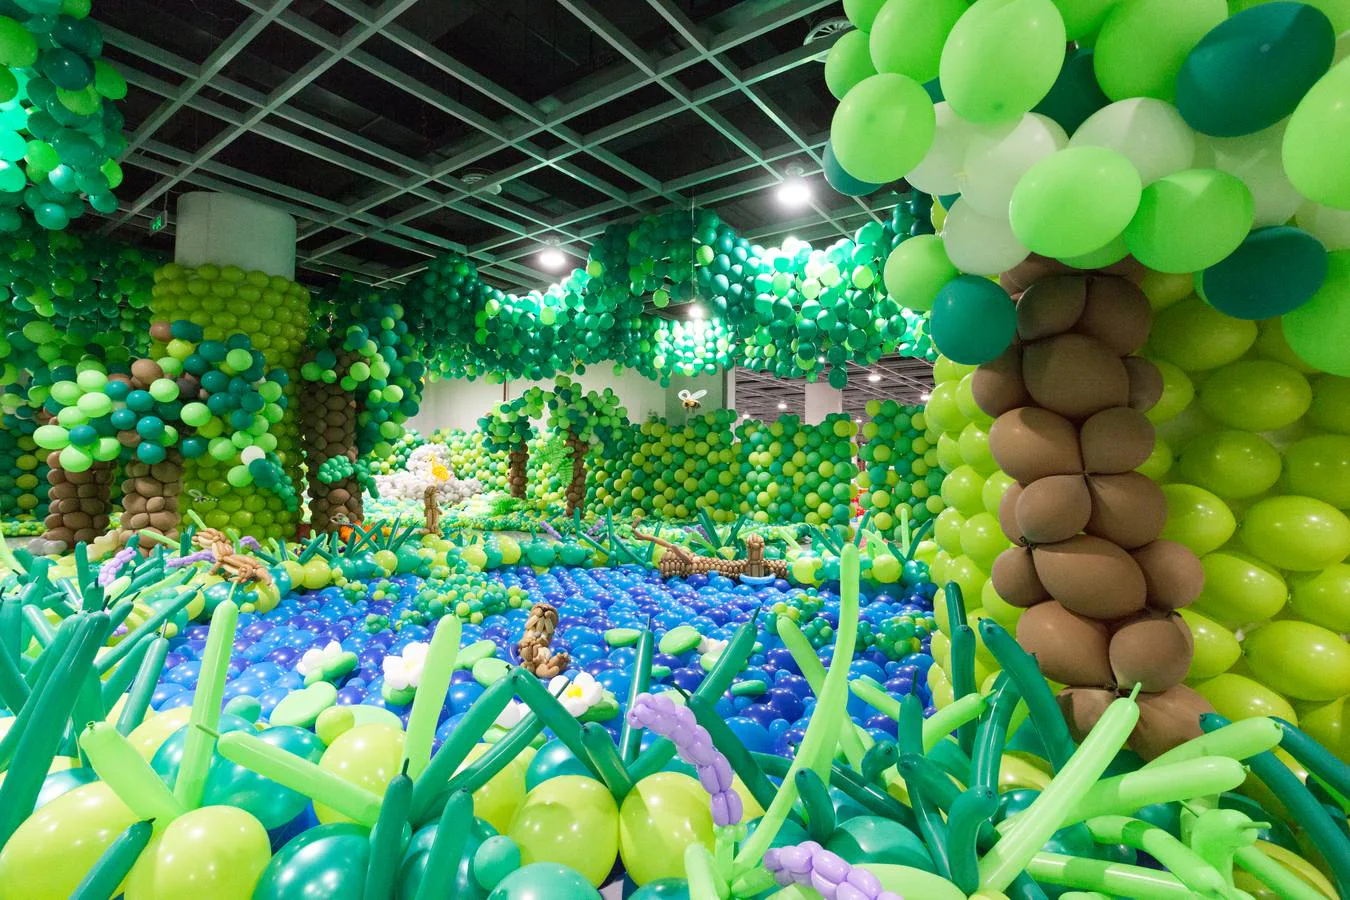 Las imágenes del zoológico hecho de globos que ha batido el Guinness